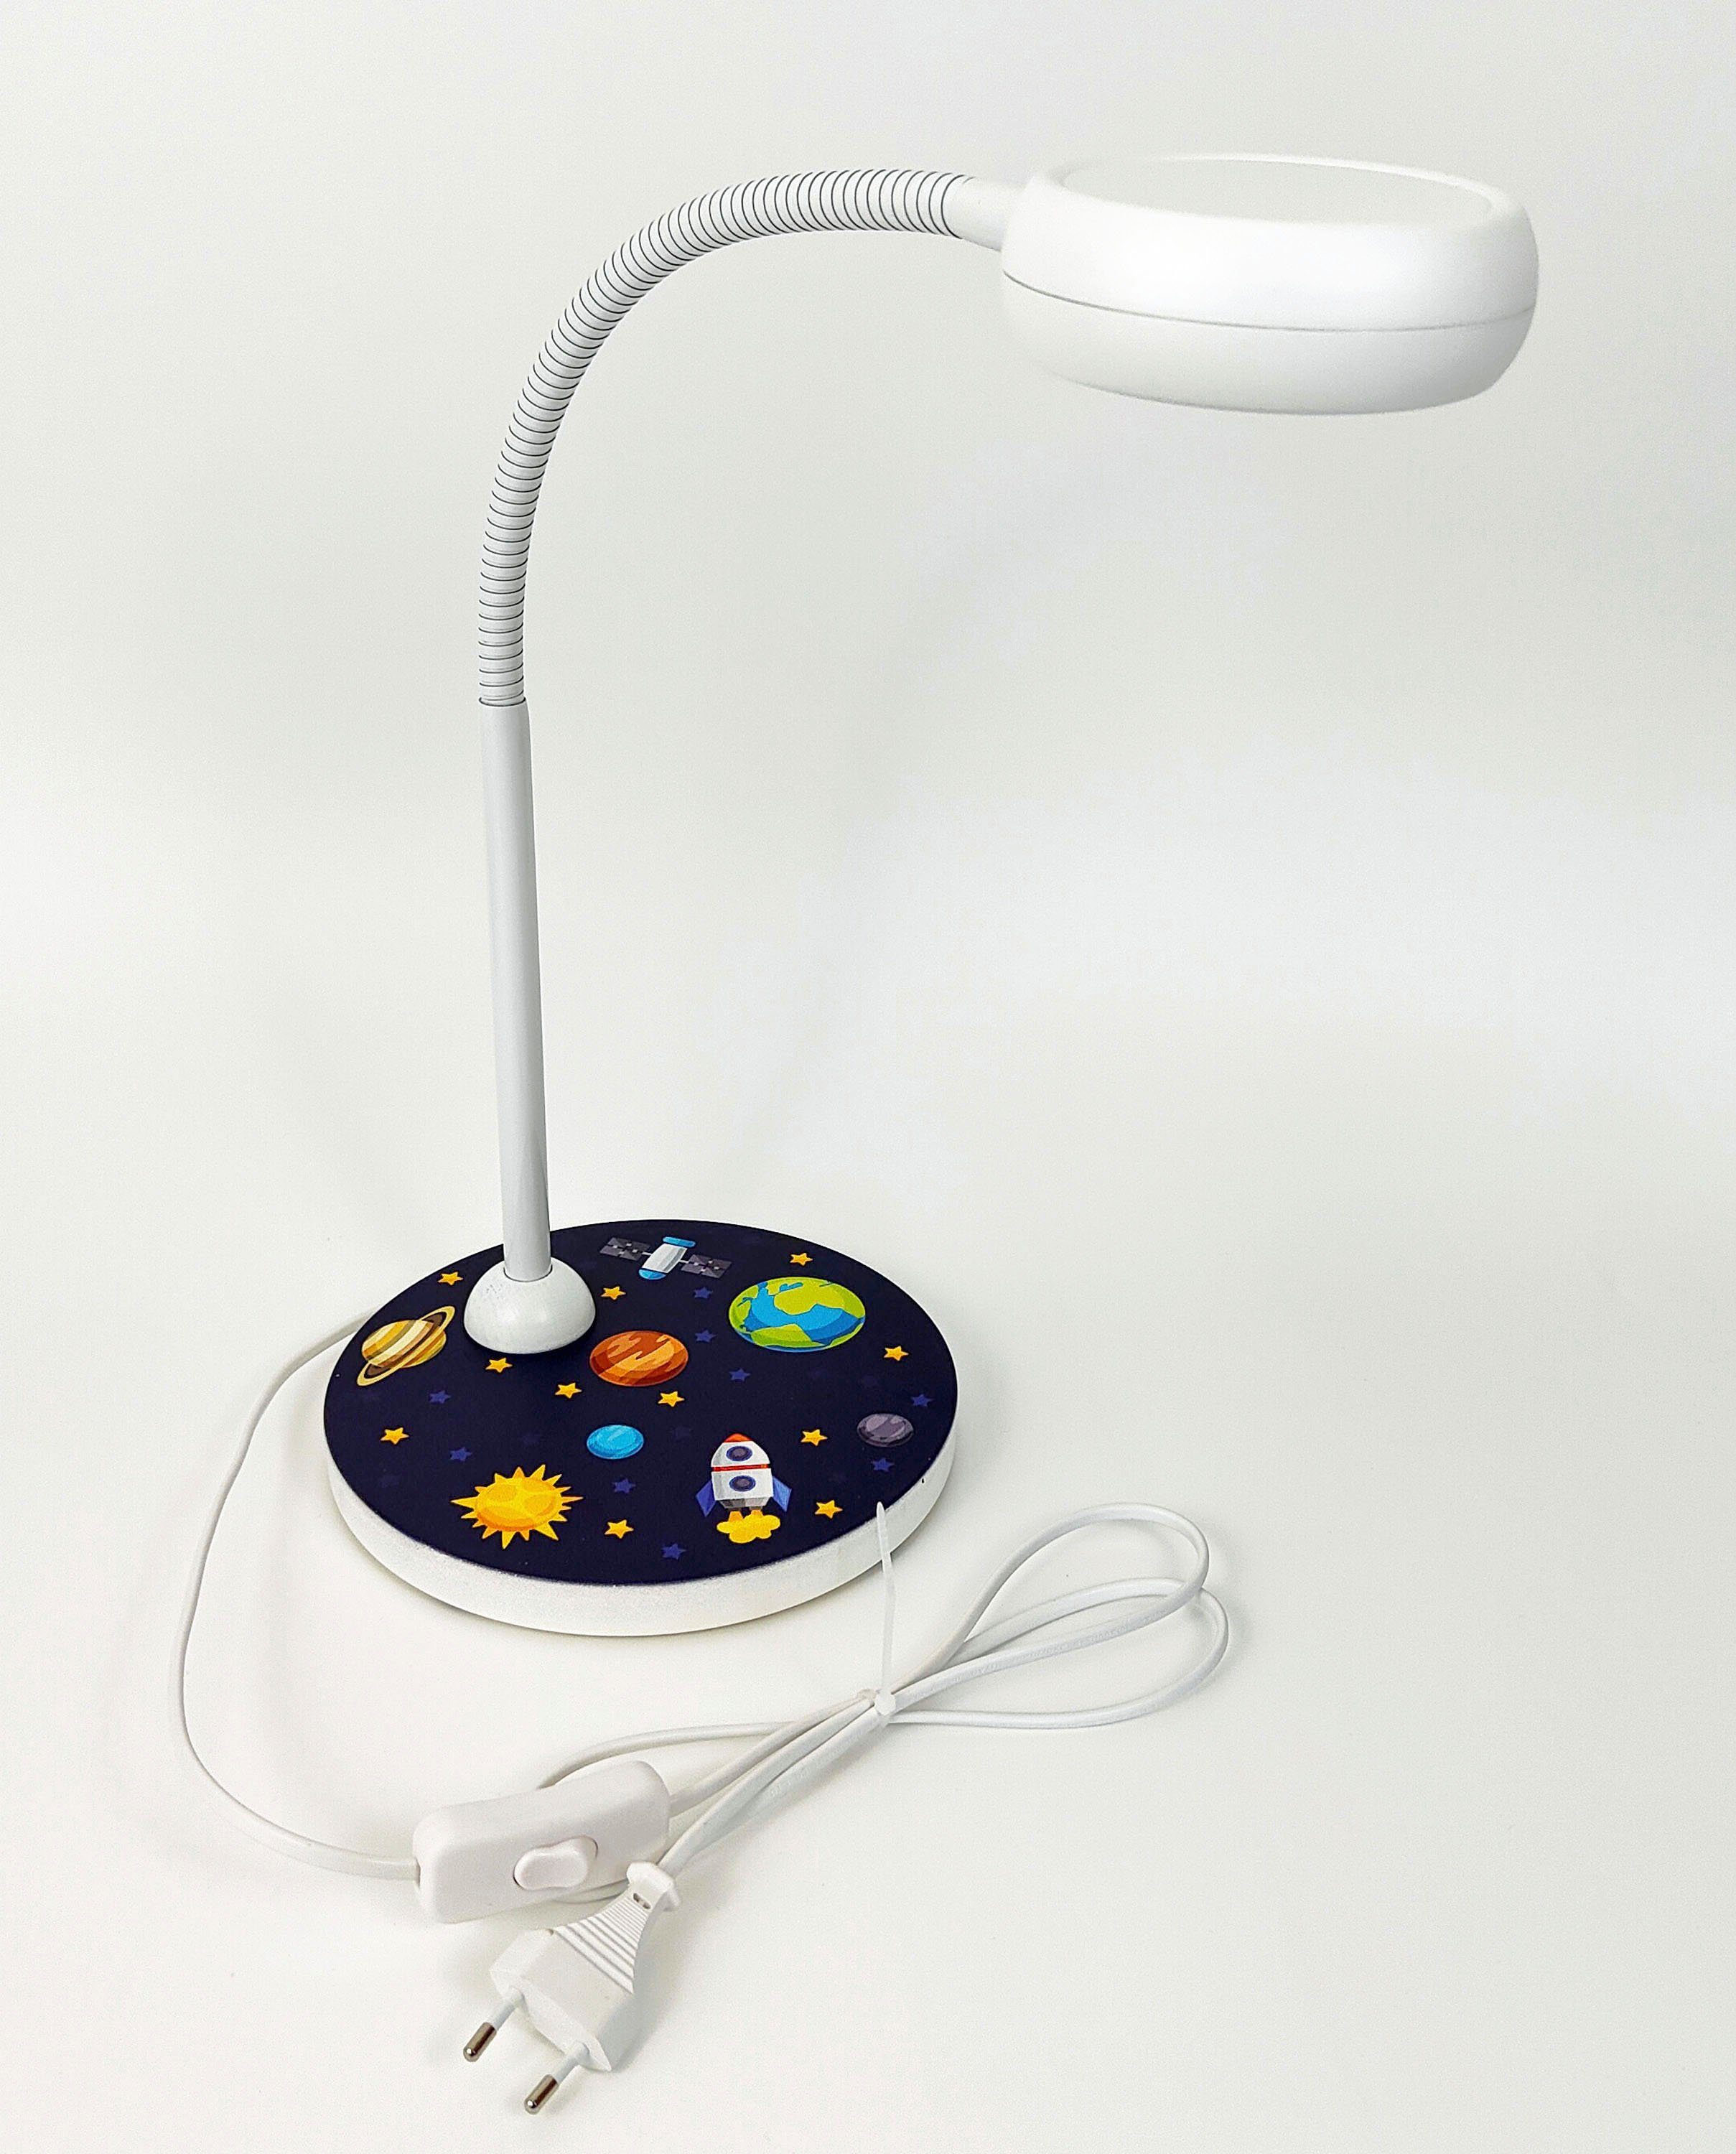 niermann Nachttischlampe Tischleuchte Weltall, Hochwertige Tisch-Leseleuchte ohne Leuchtmittel,